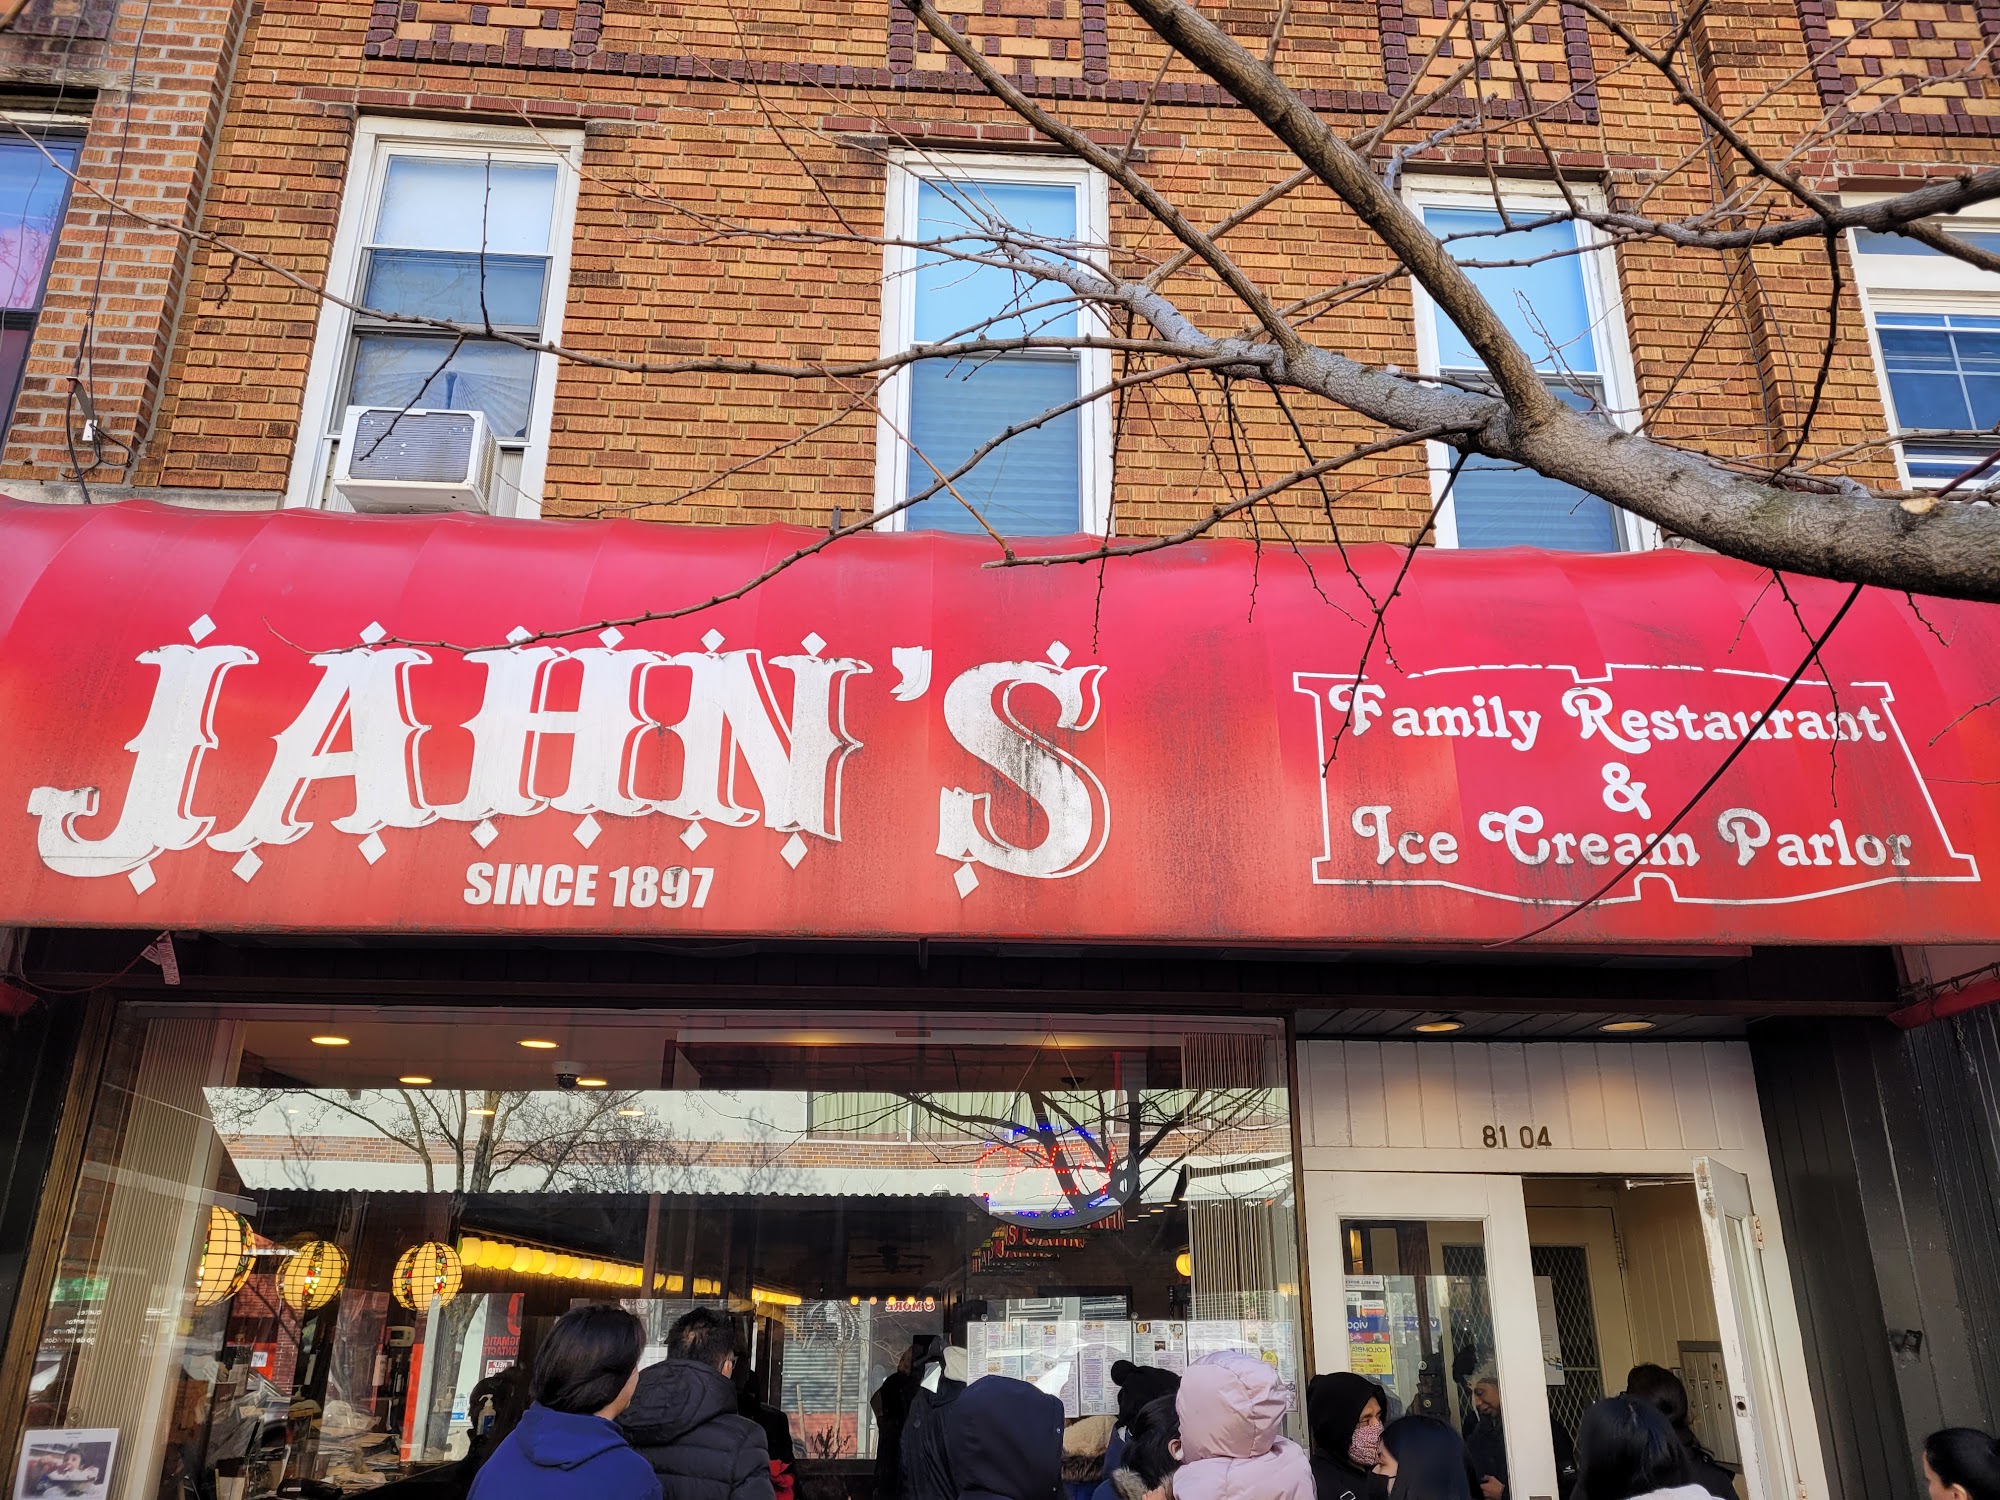 Jahn's